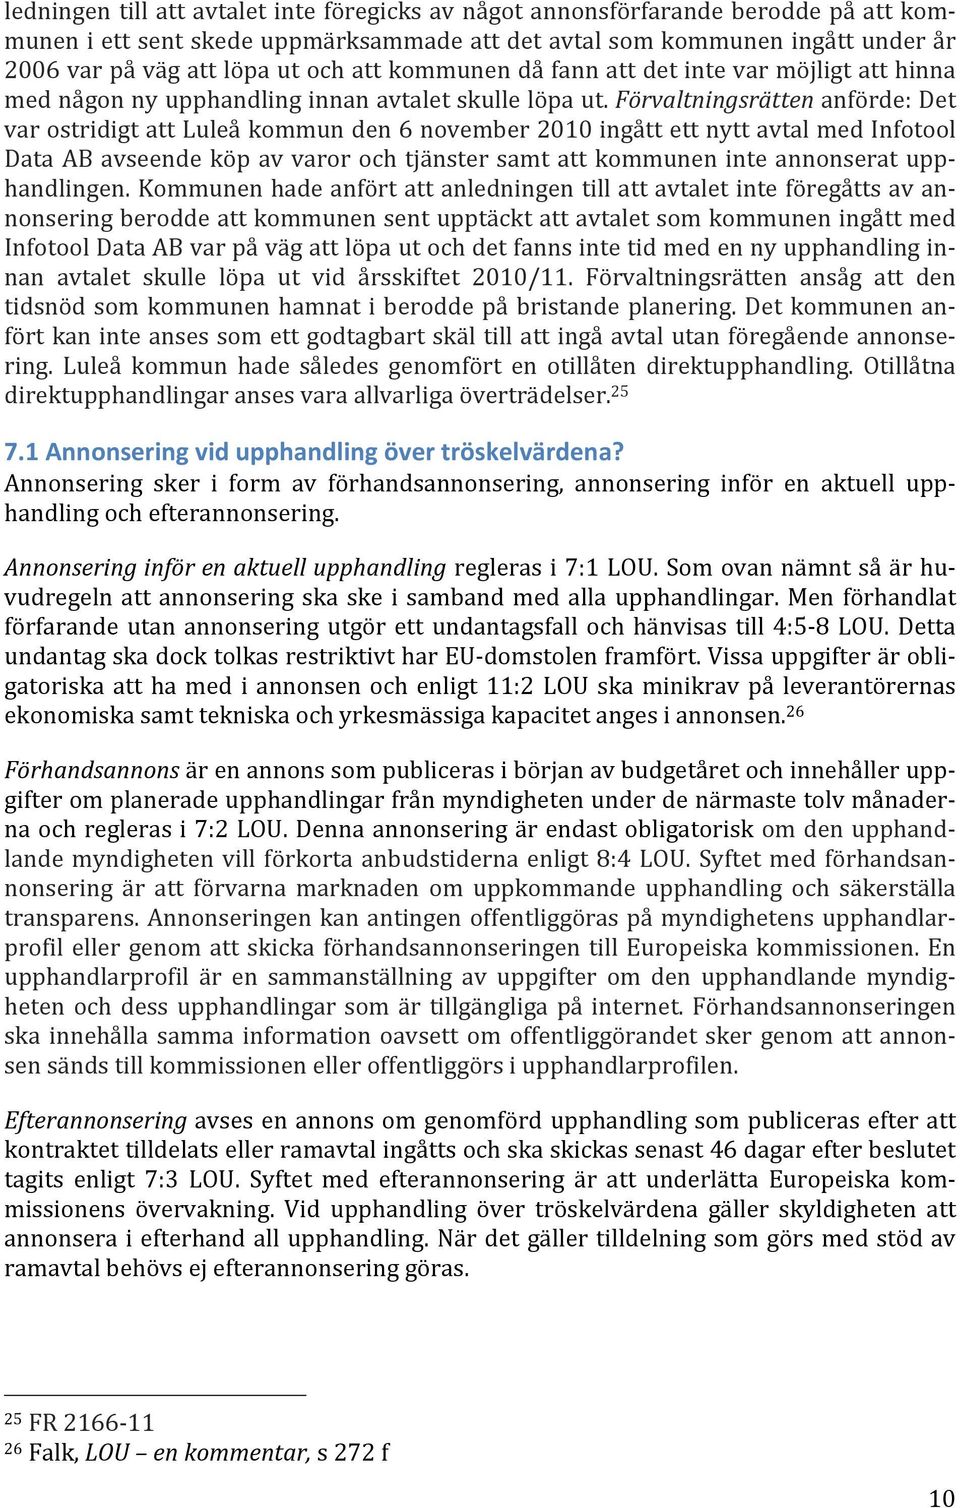 Förvaltningsrätten anförde: Det var ostridigt att Luleå kommun den 6 november 2010 ingått ett nytt avtal med Infotool Data AB avseende köp av varor och tjänster samt att kommunen inte annonserat upp-